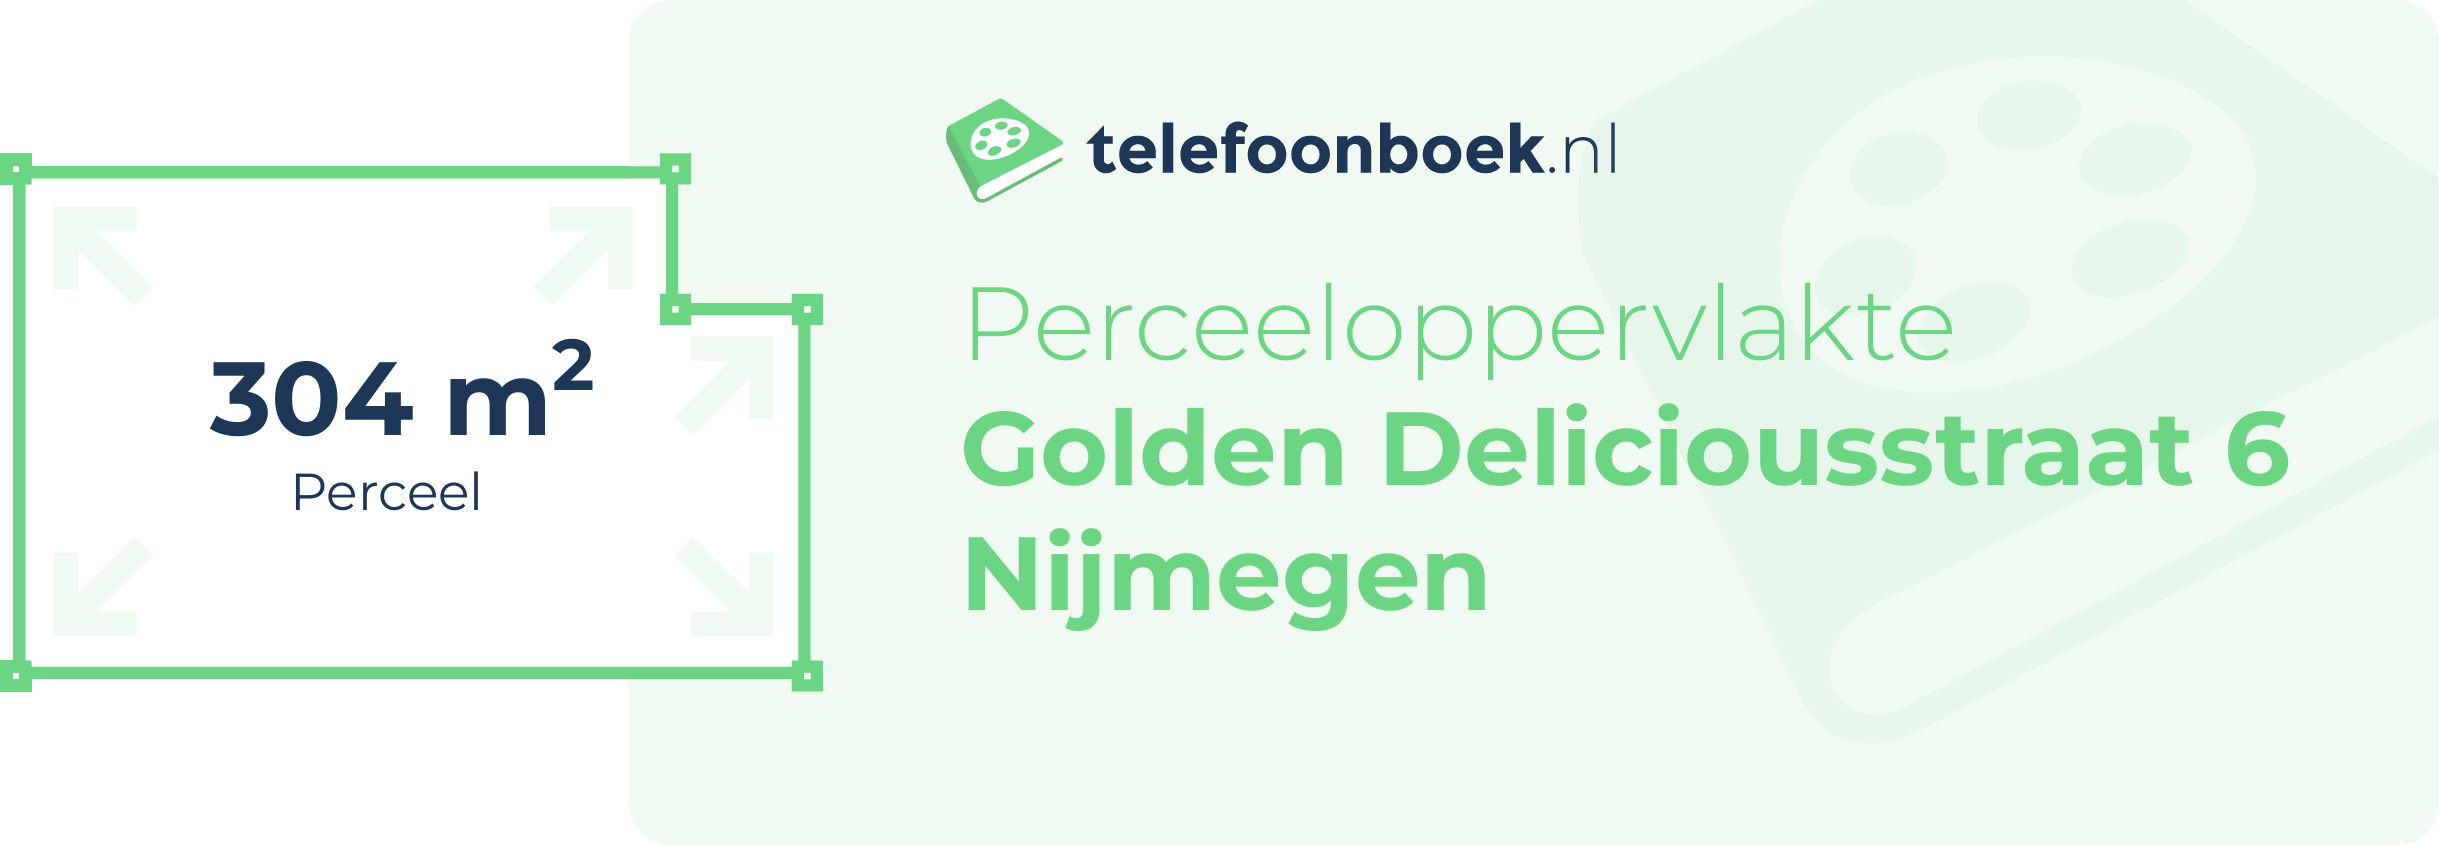 Perceeloppervlakte Golden Deliciousstraat 6 Nijmegen